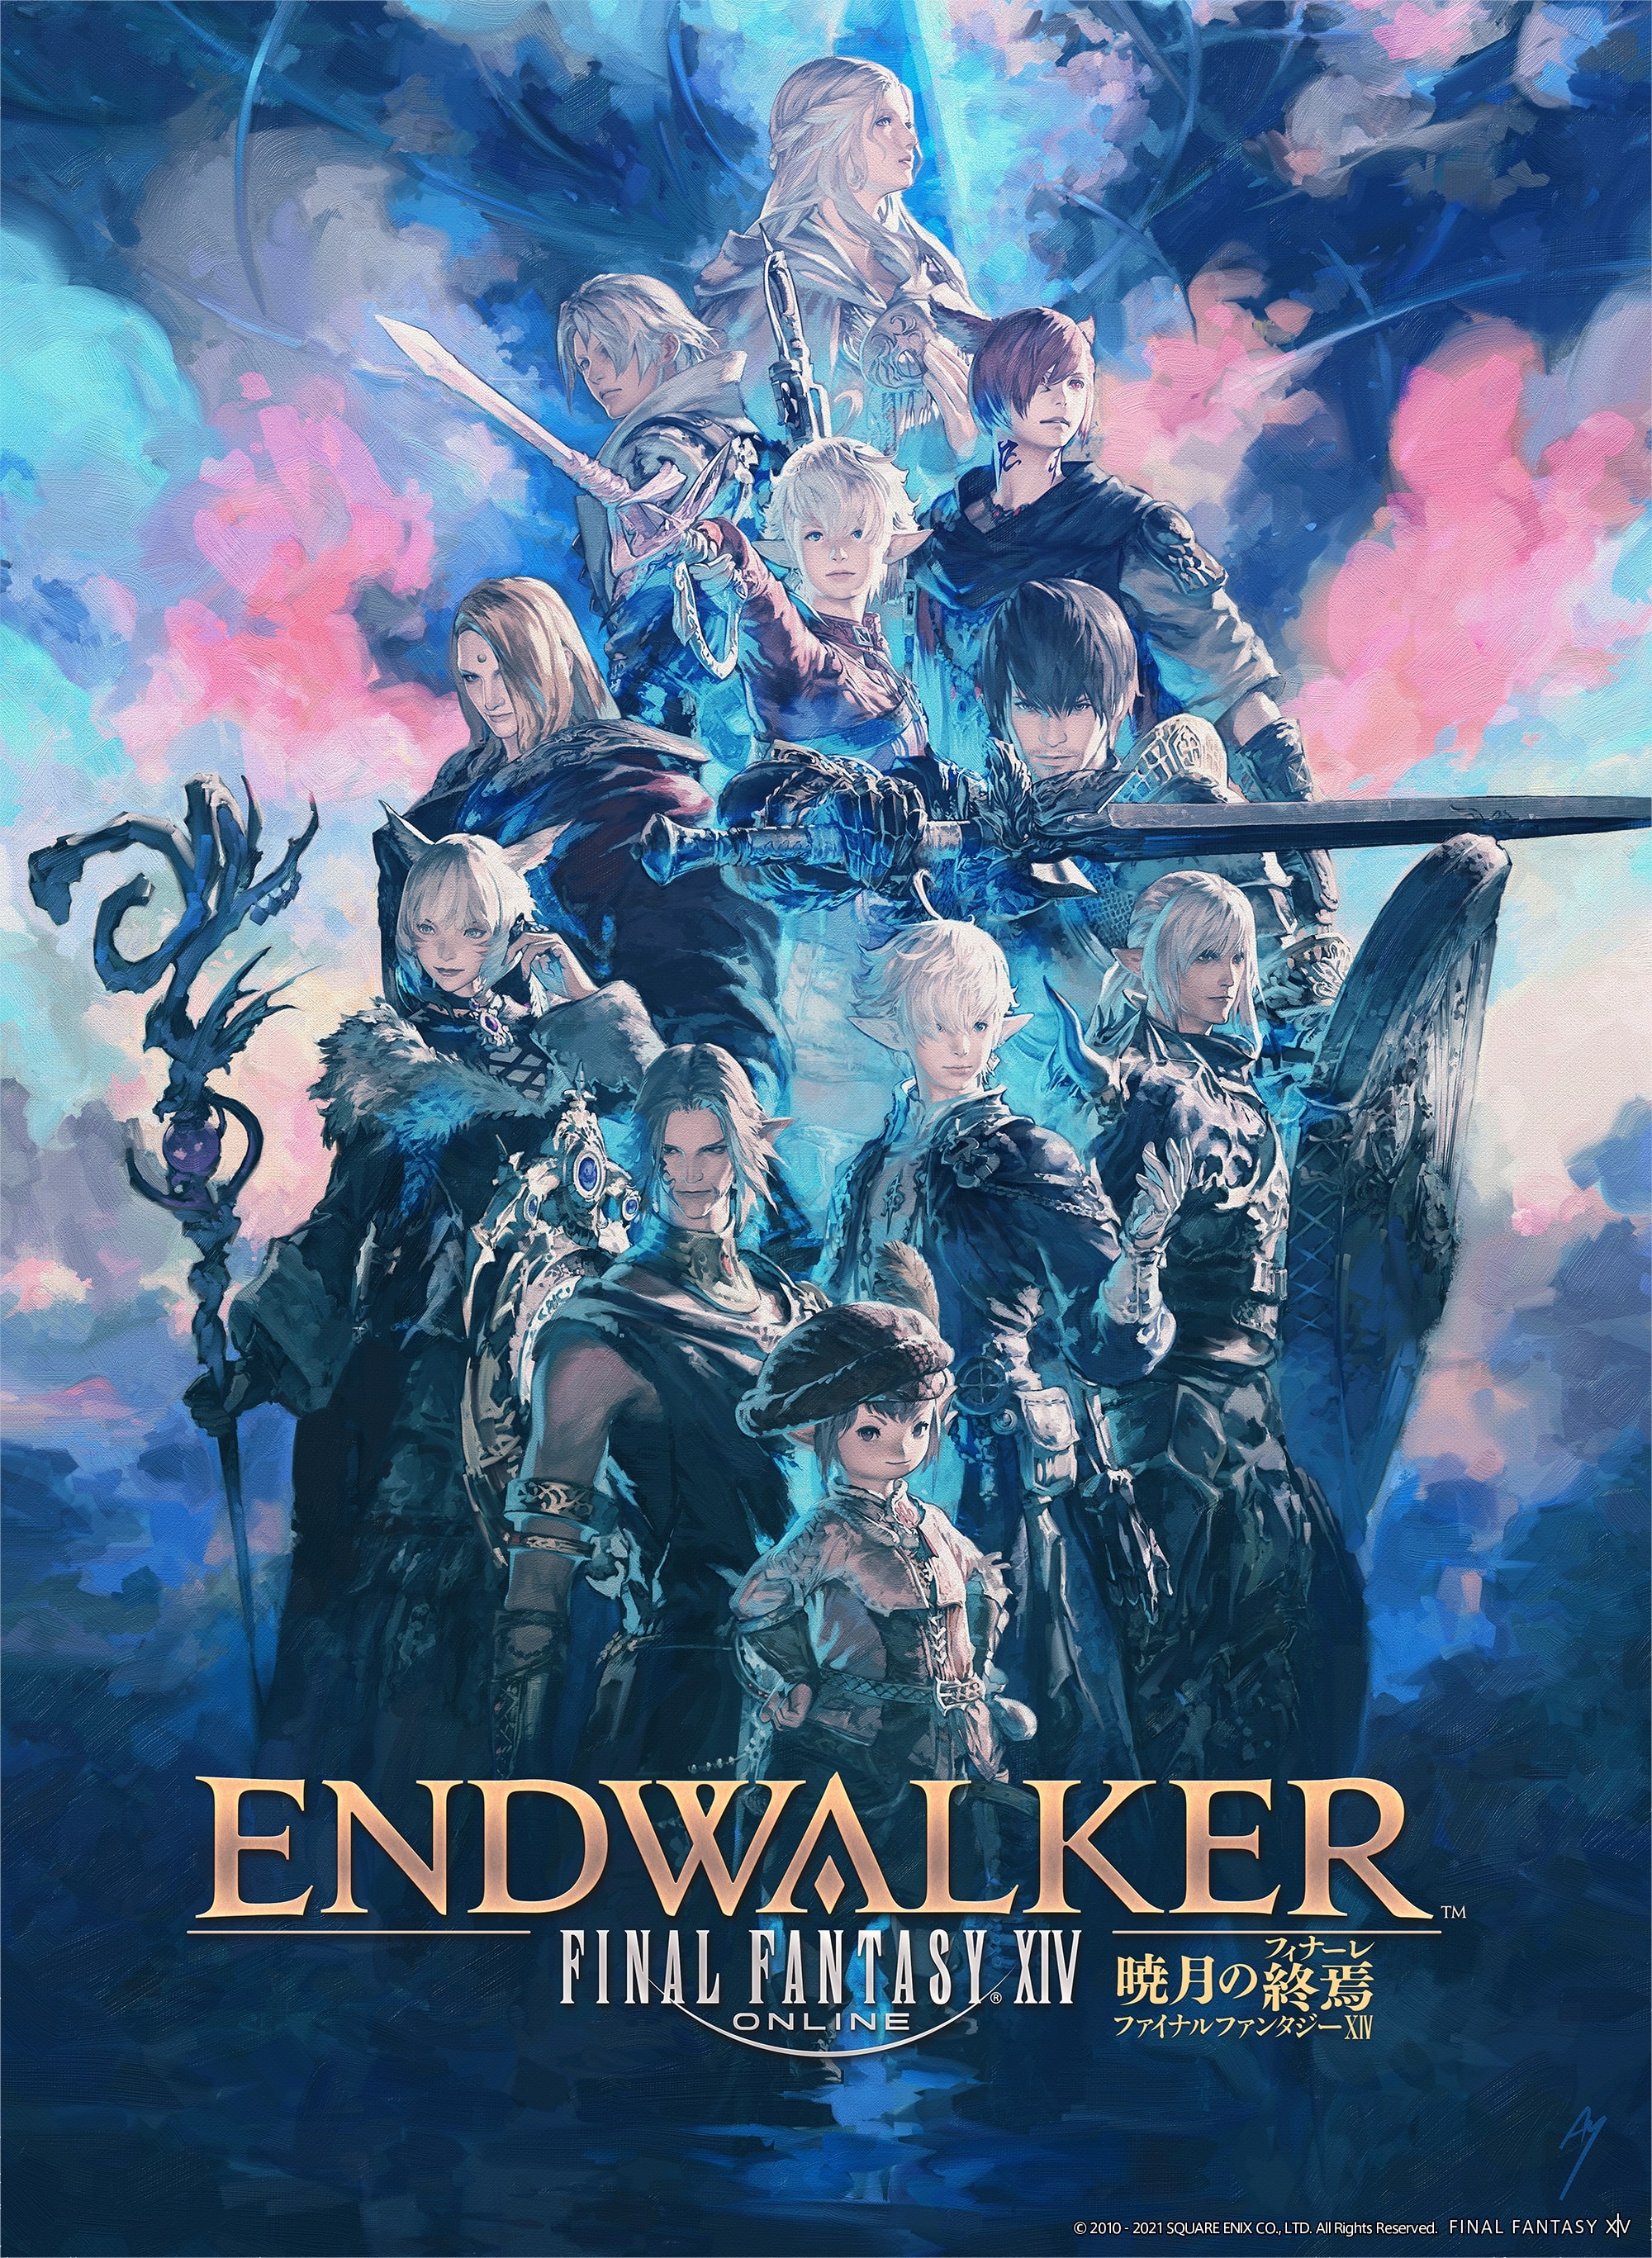 Final fantasy xiv endwalker 1 54